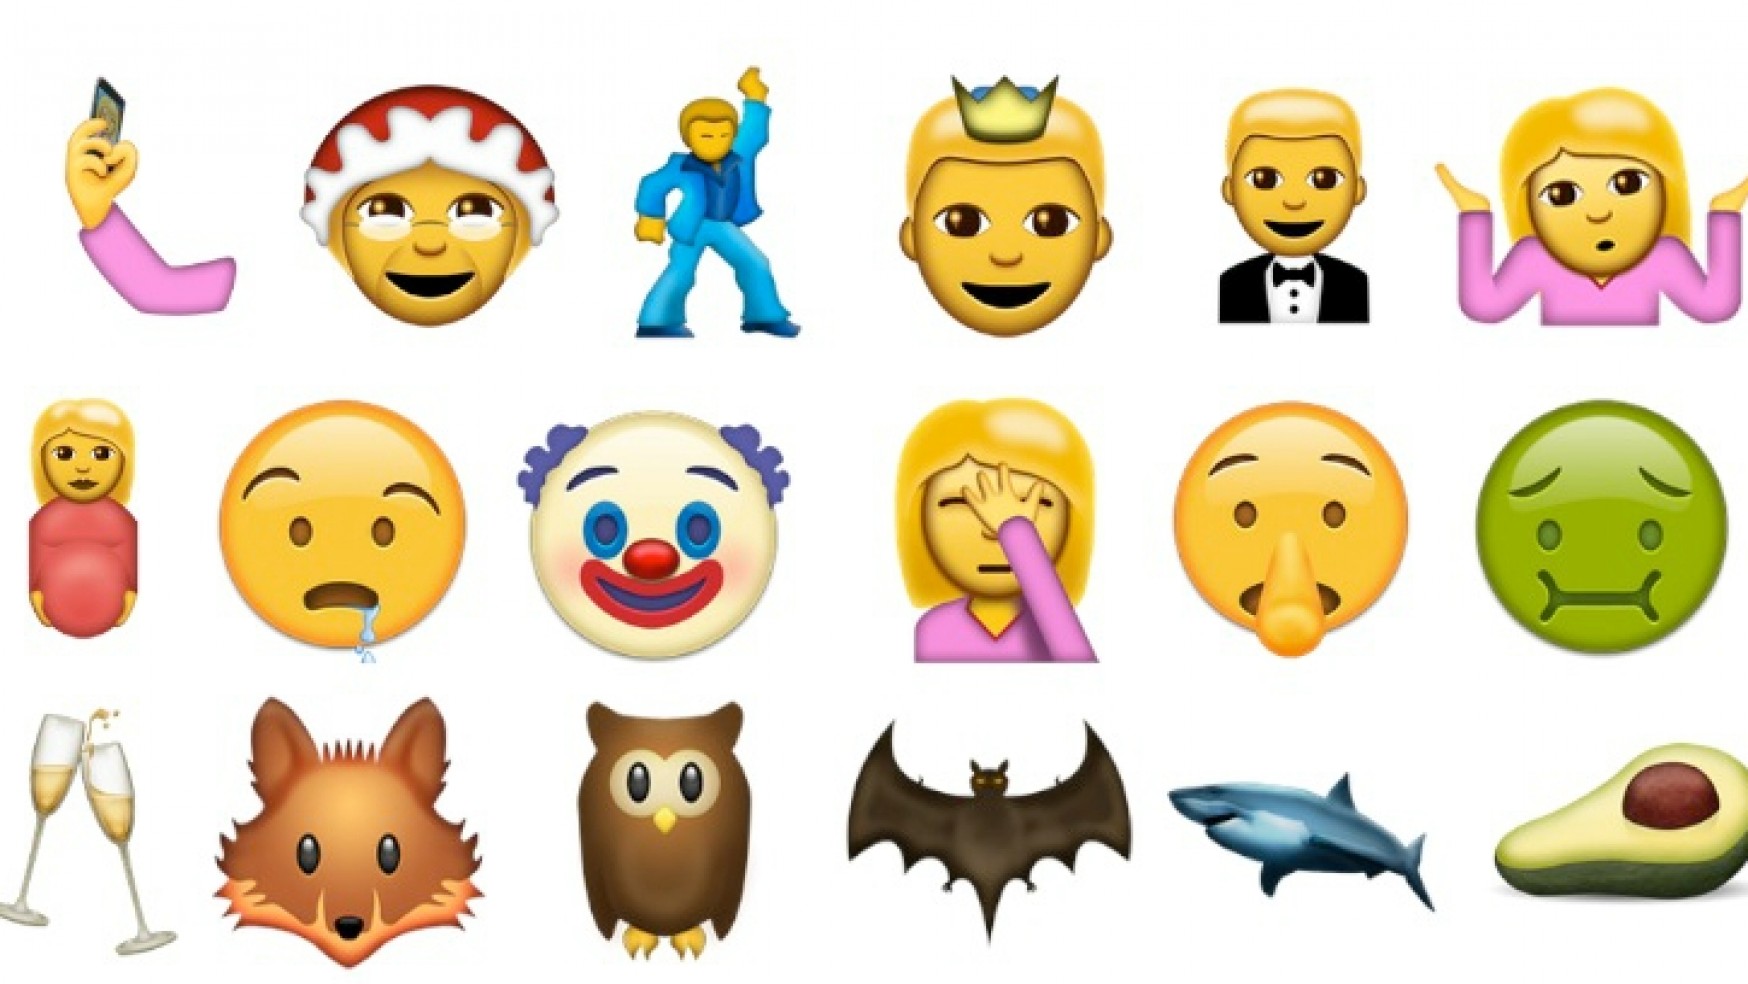 articulos/Los-38-nuevos-Emojis-que-podremos-usar-en-WhatsApp-1748x984.jpg